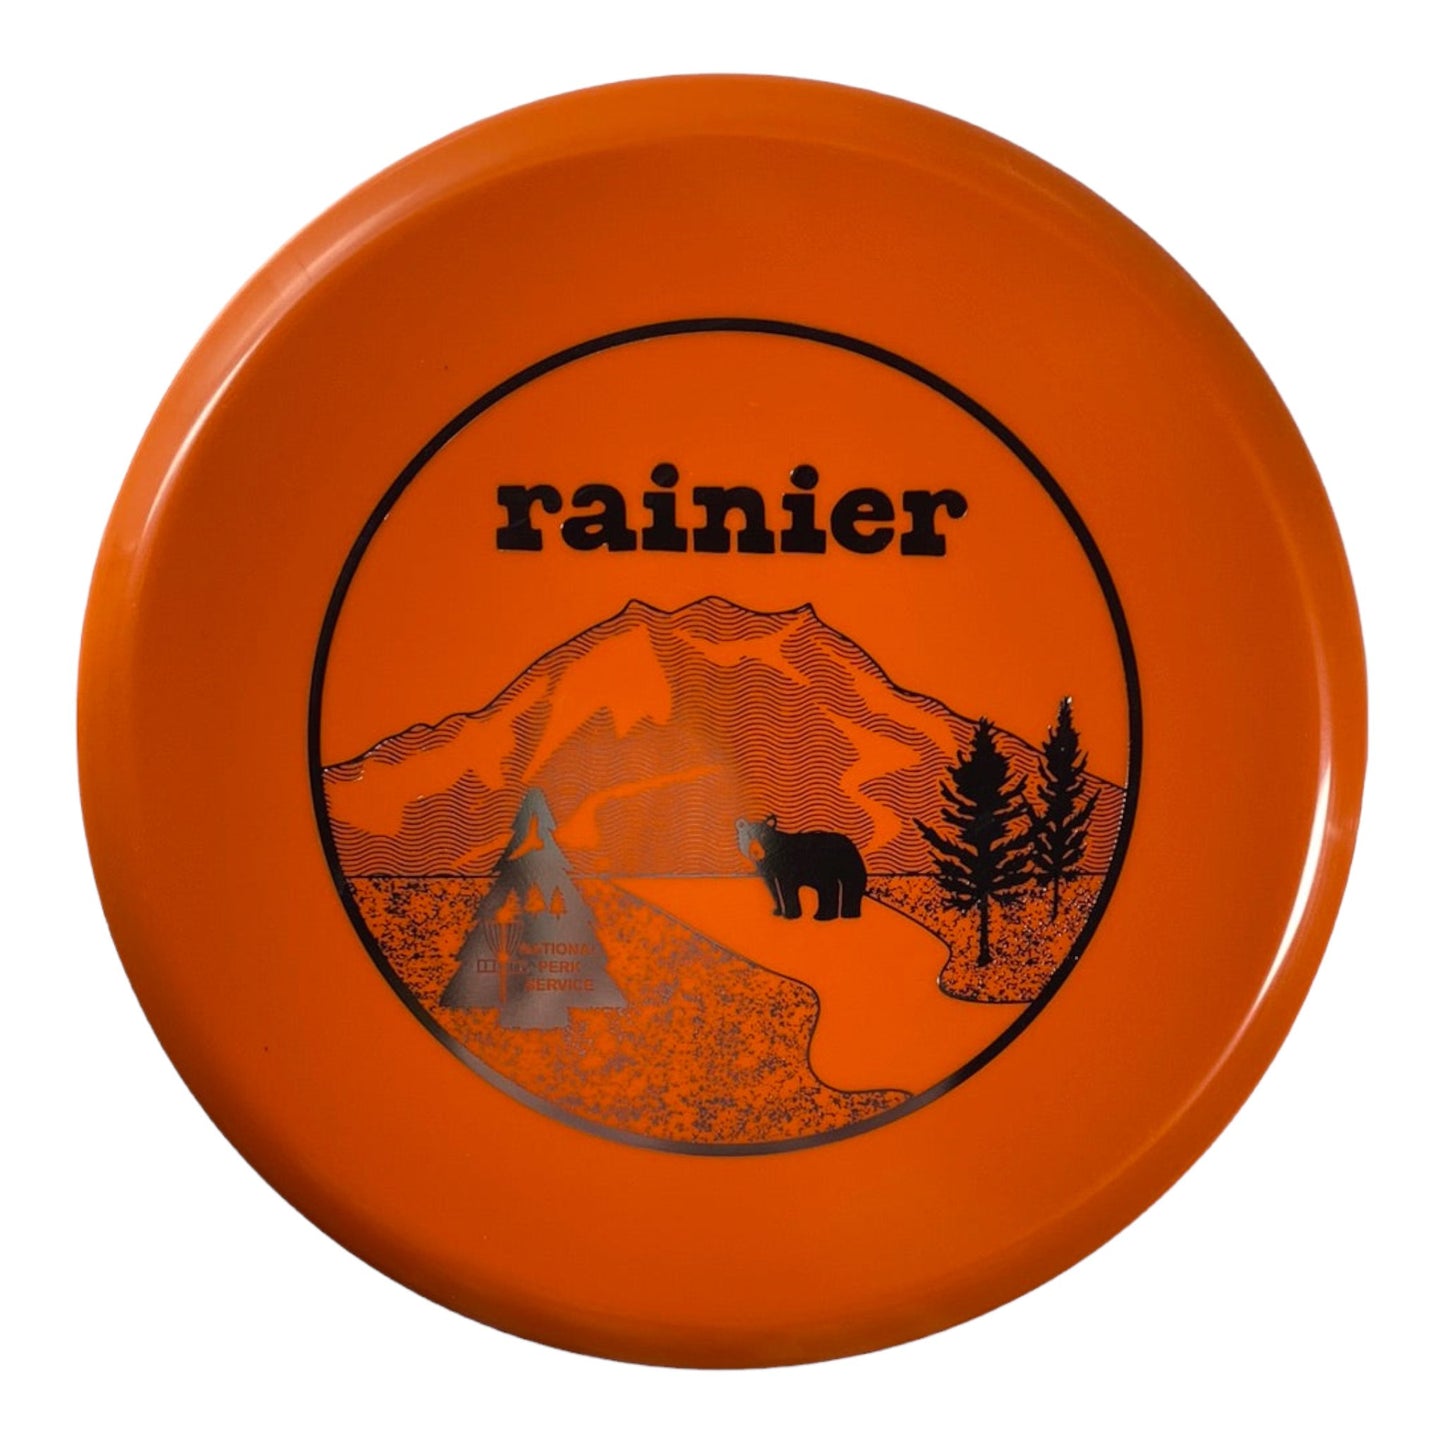 Innova Champion Discs Rainier - Invader | Star | Orange/Silver 171g (First Run) 17/50 Disc Golf